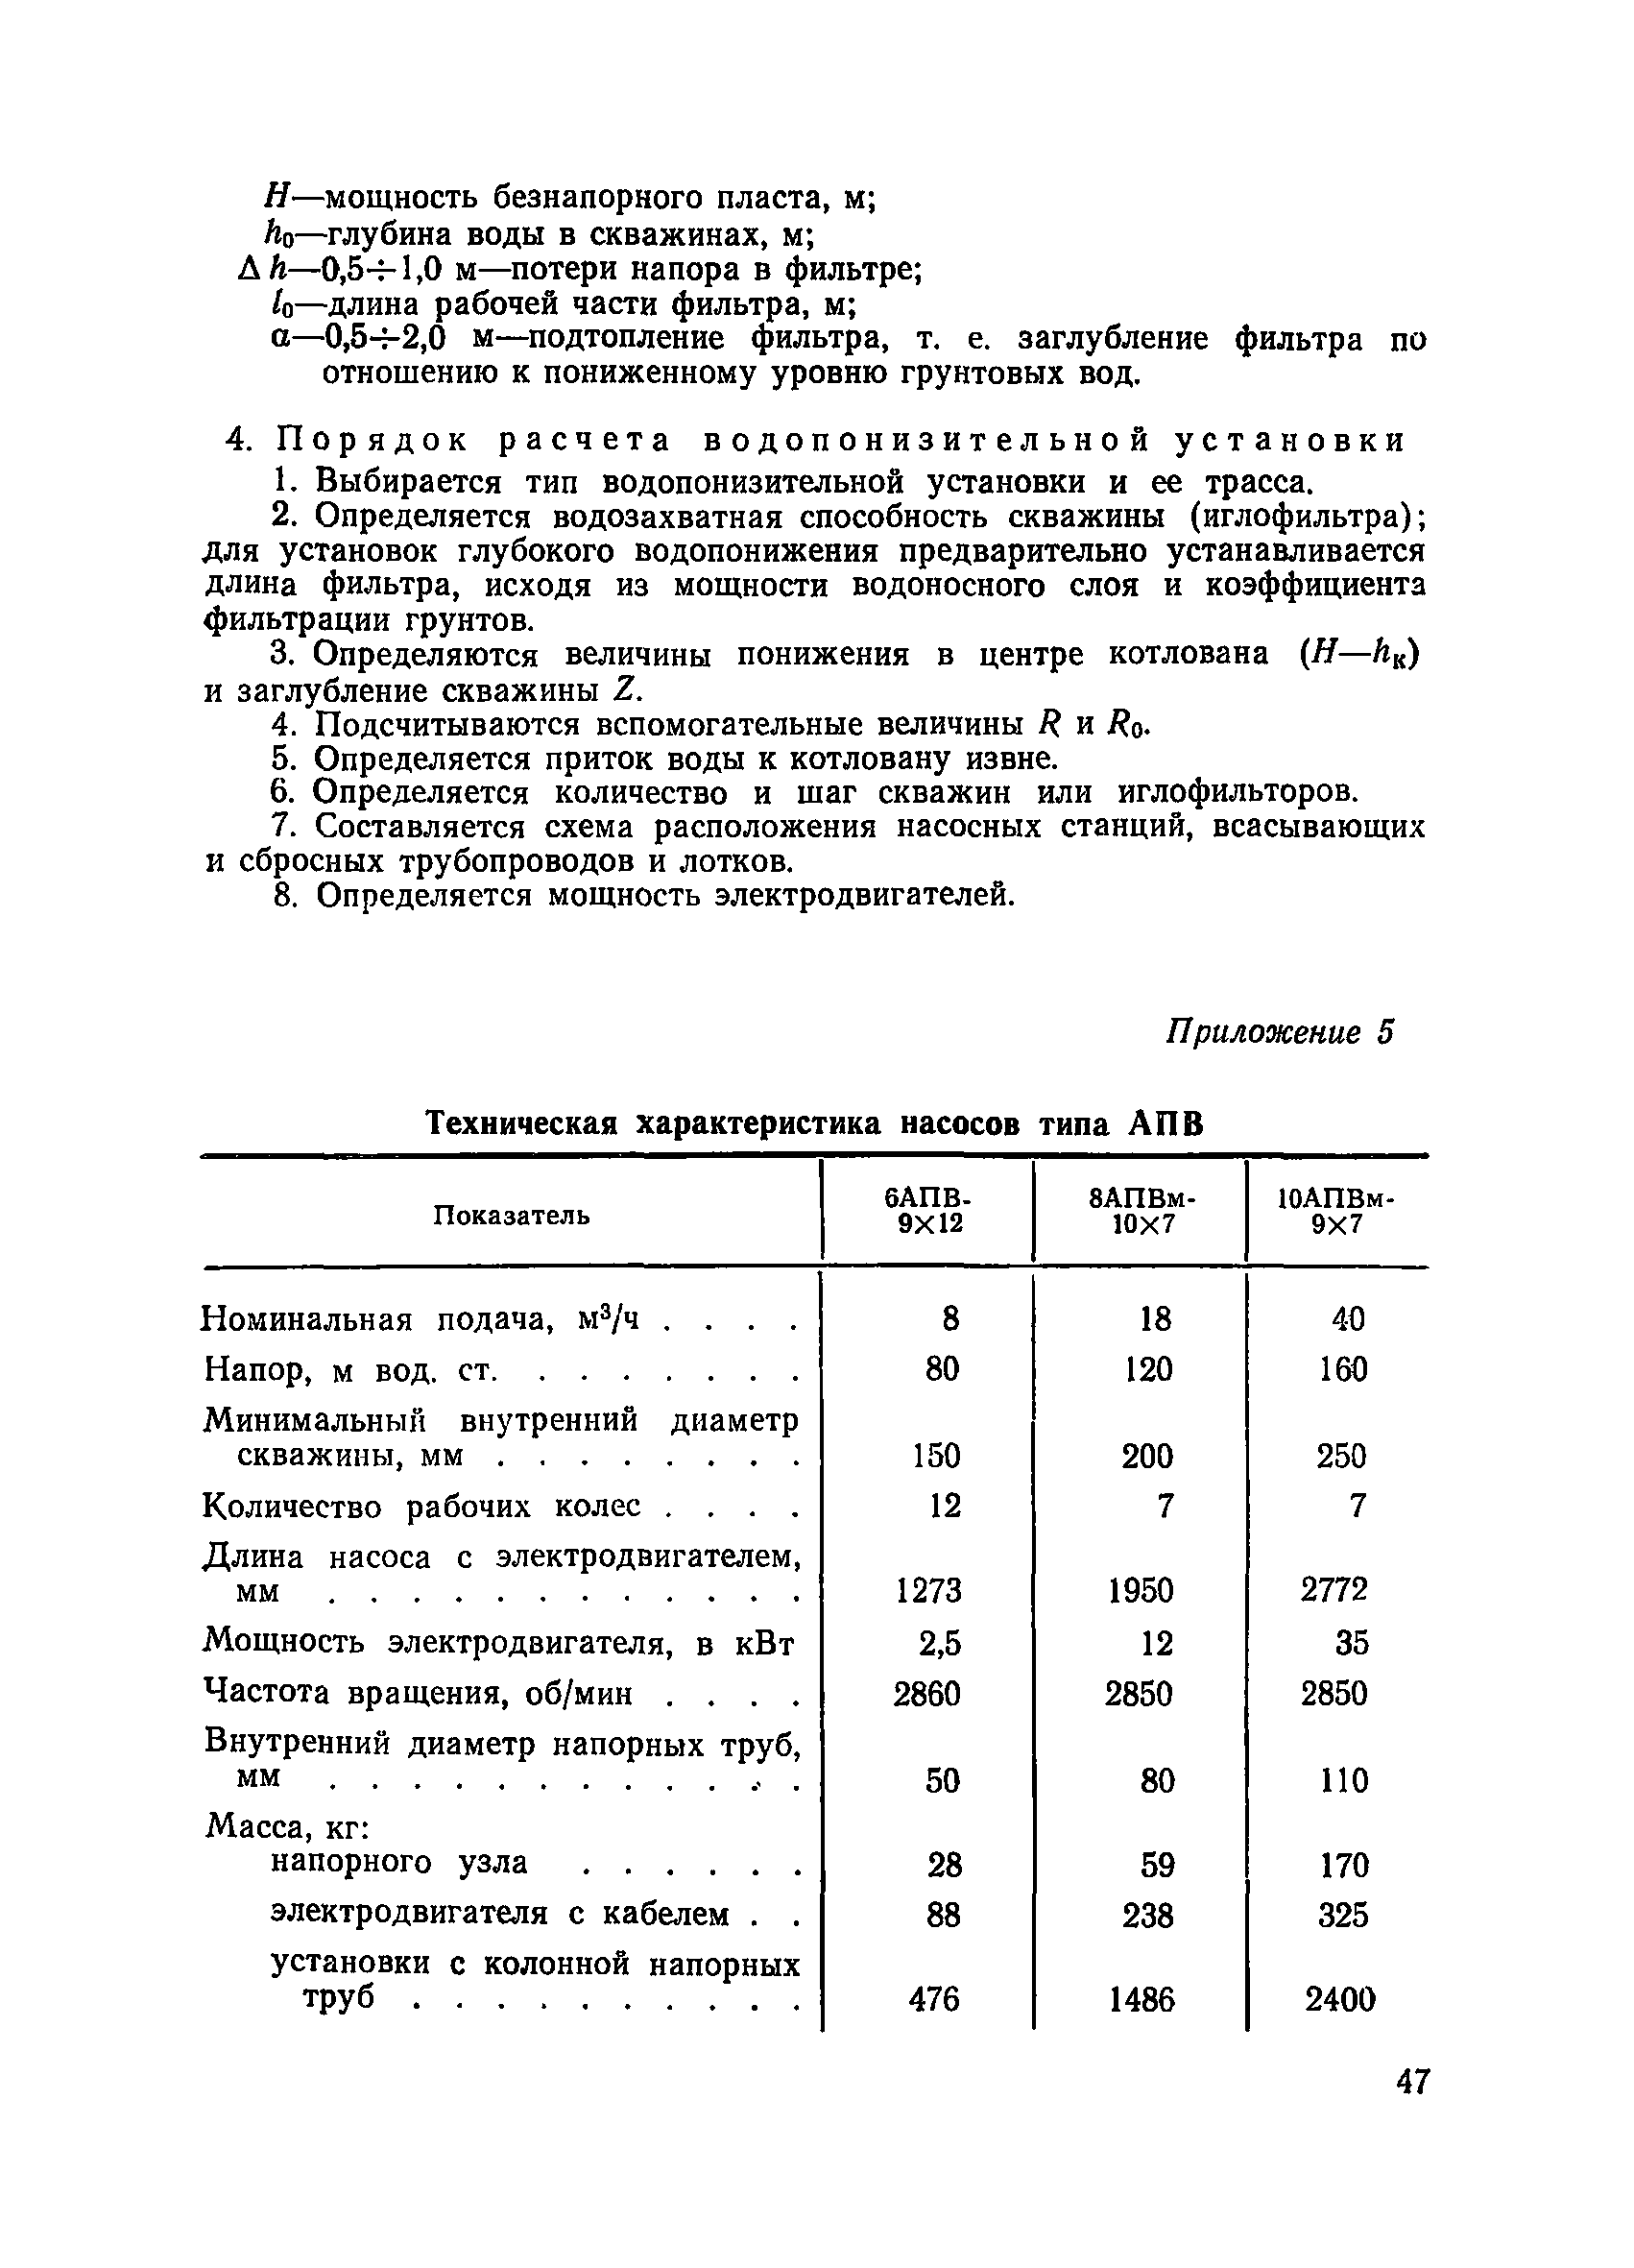 ВСН 34/XVII-78